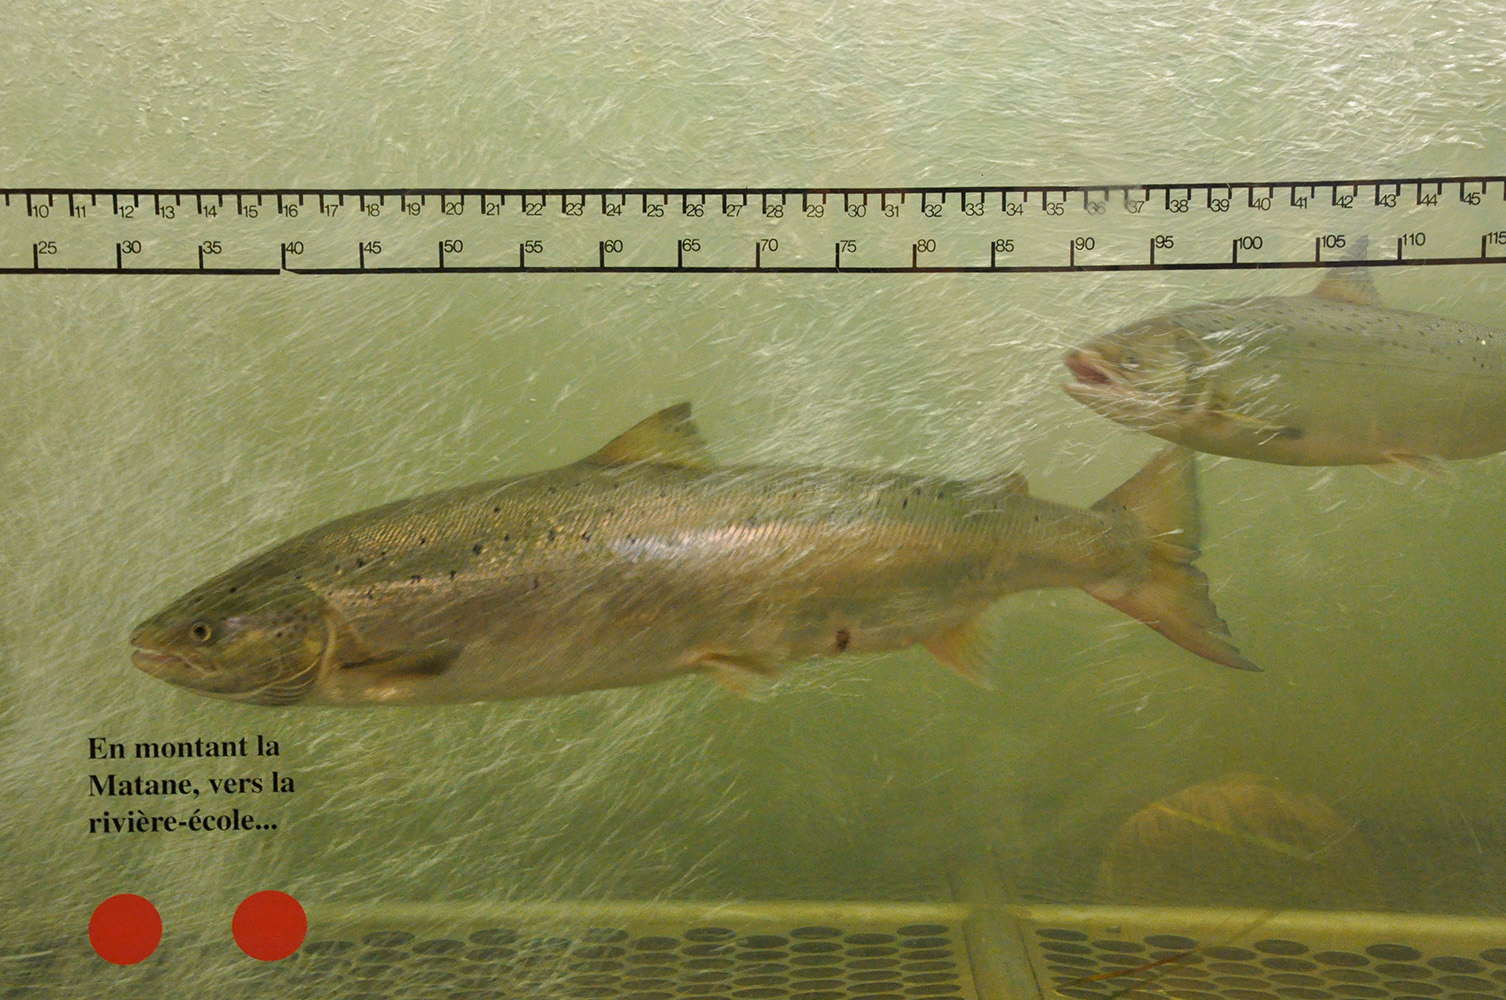 Photographie couleur de deux saumons passant devant la vitre de la passe migratoire du barrage de la rivière Matane.  